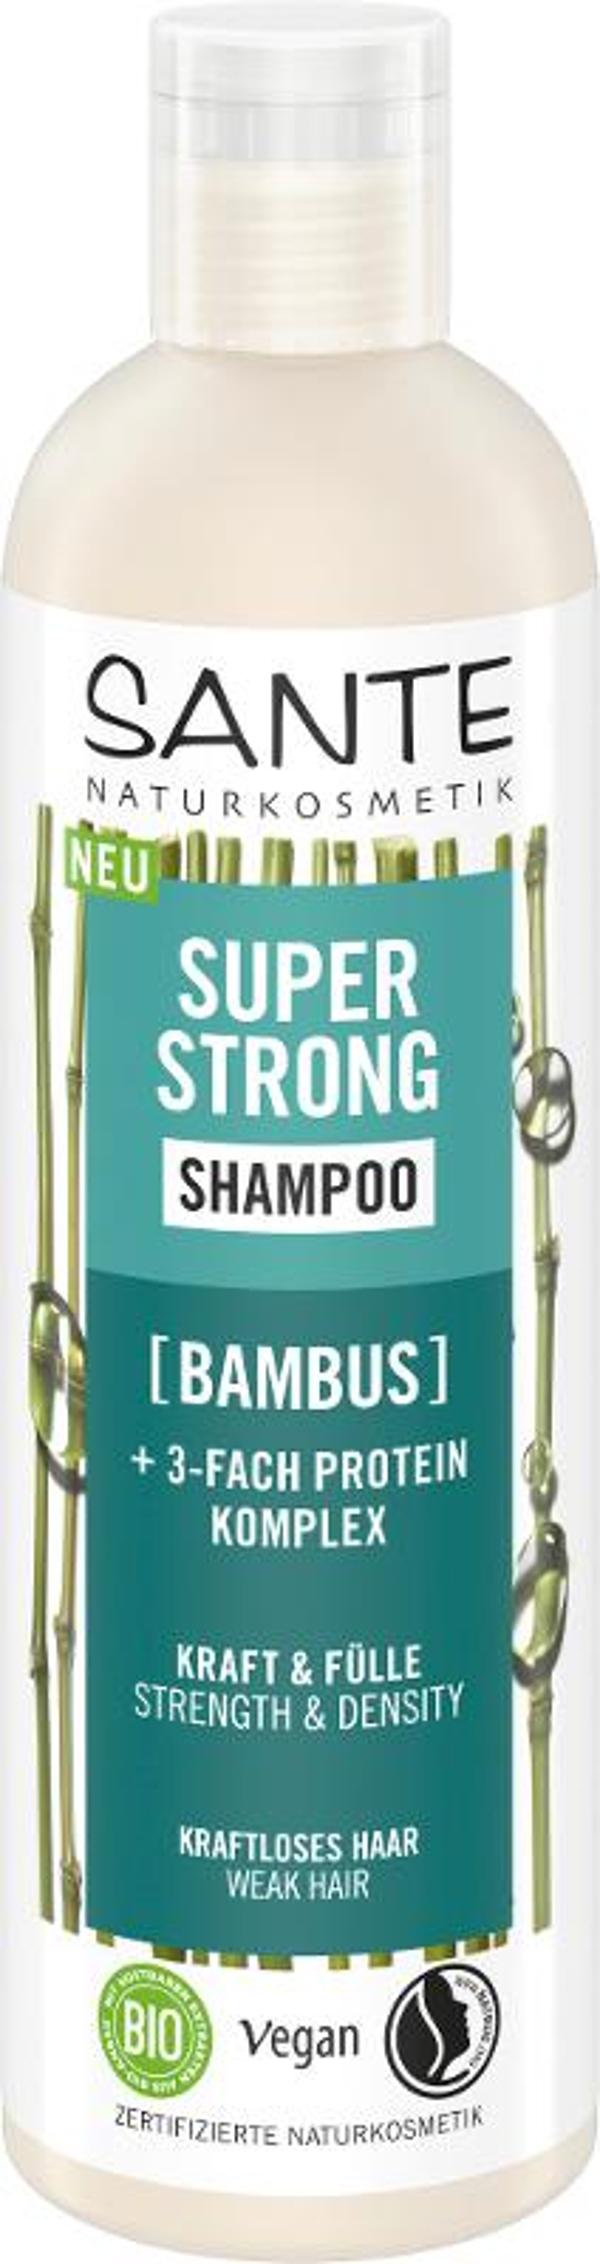 Produktfoto zu Super Strong Shampoo Bambus 250ml Sante